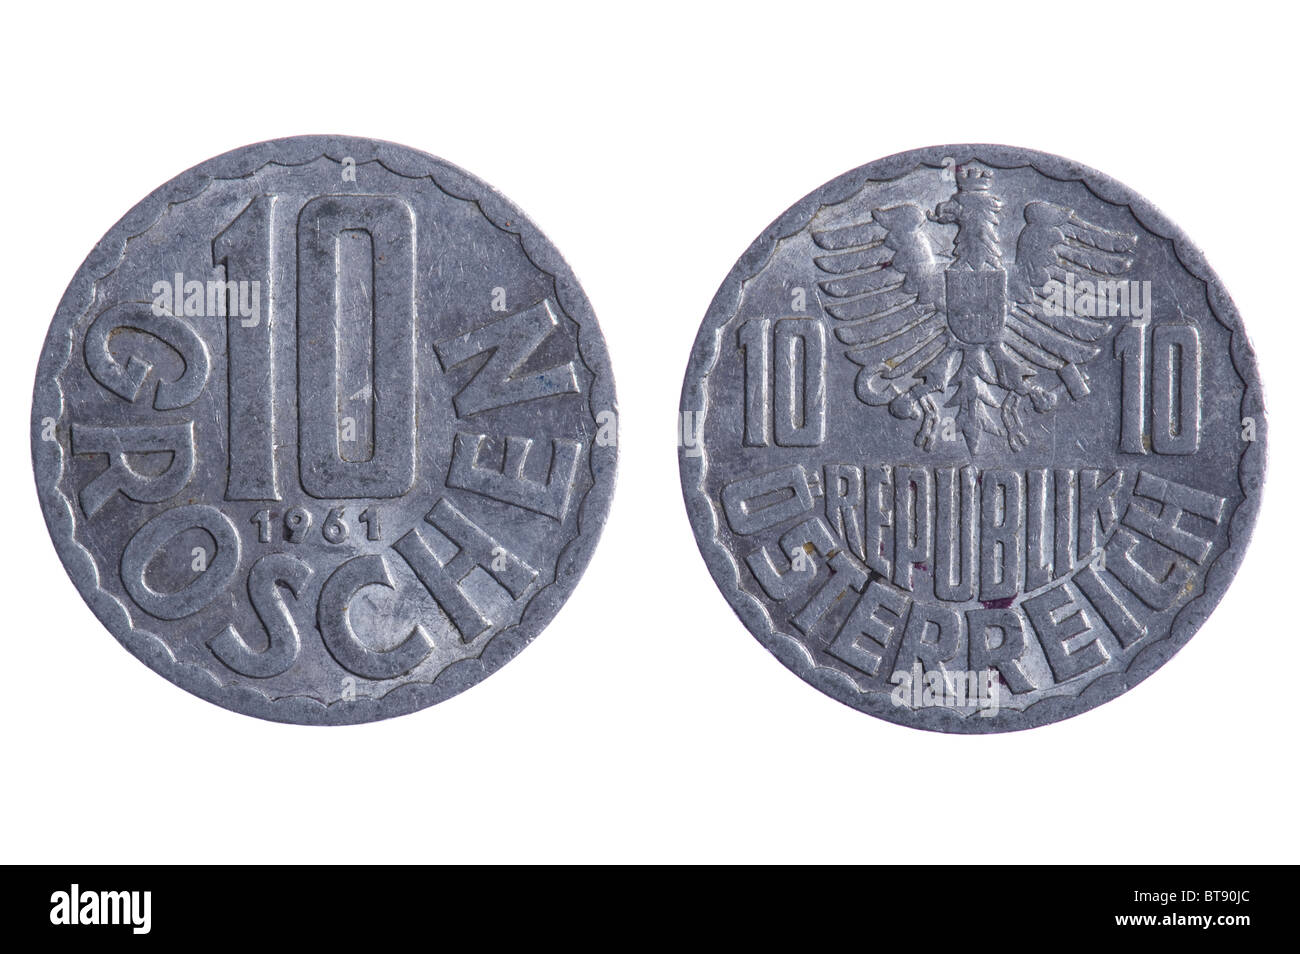 Objekt auf weiß - Österreich Münzen hautnah Stockfoto